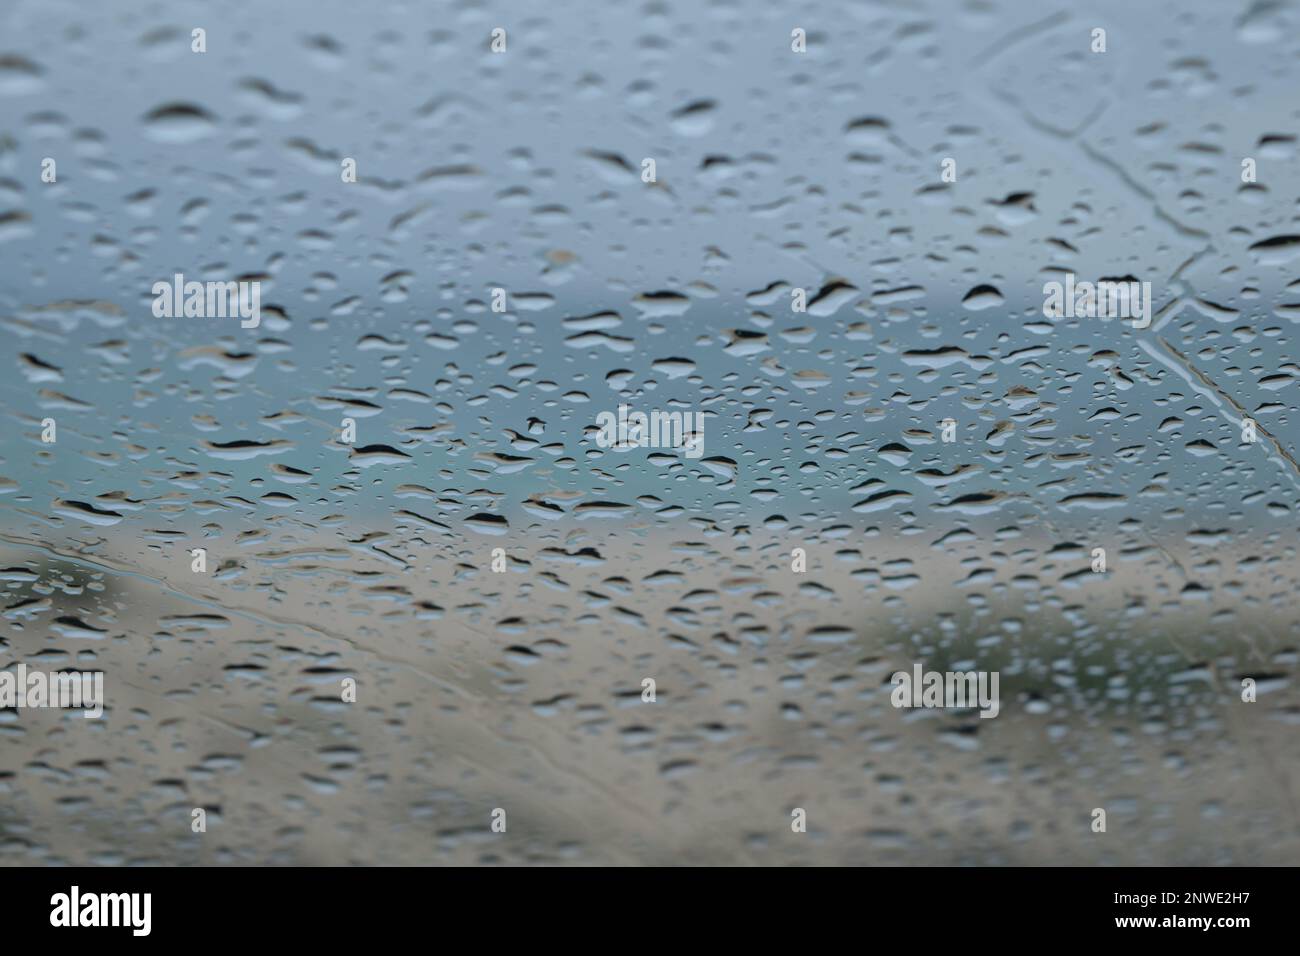 Gouttes de pluie sur le pare-brise d'une voiture, plage et mer en arrière-Plan Stockfoto